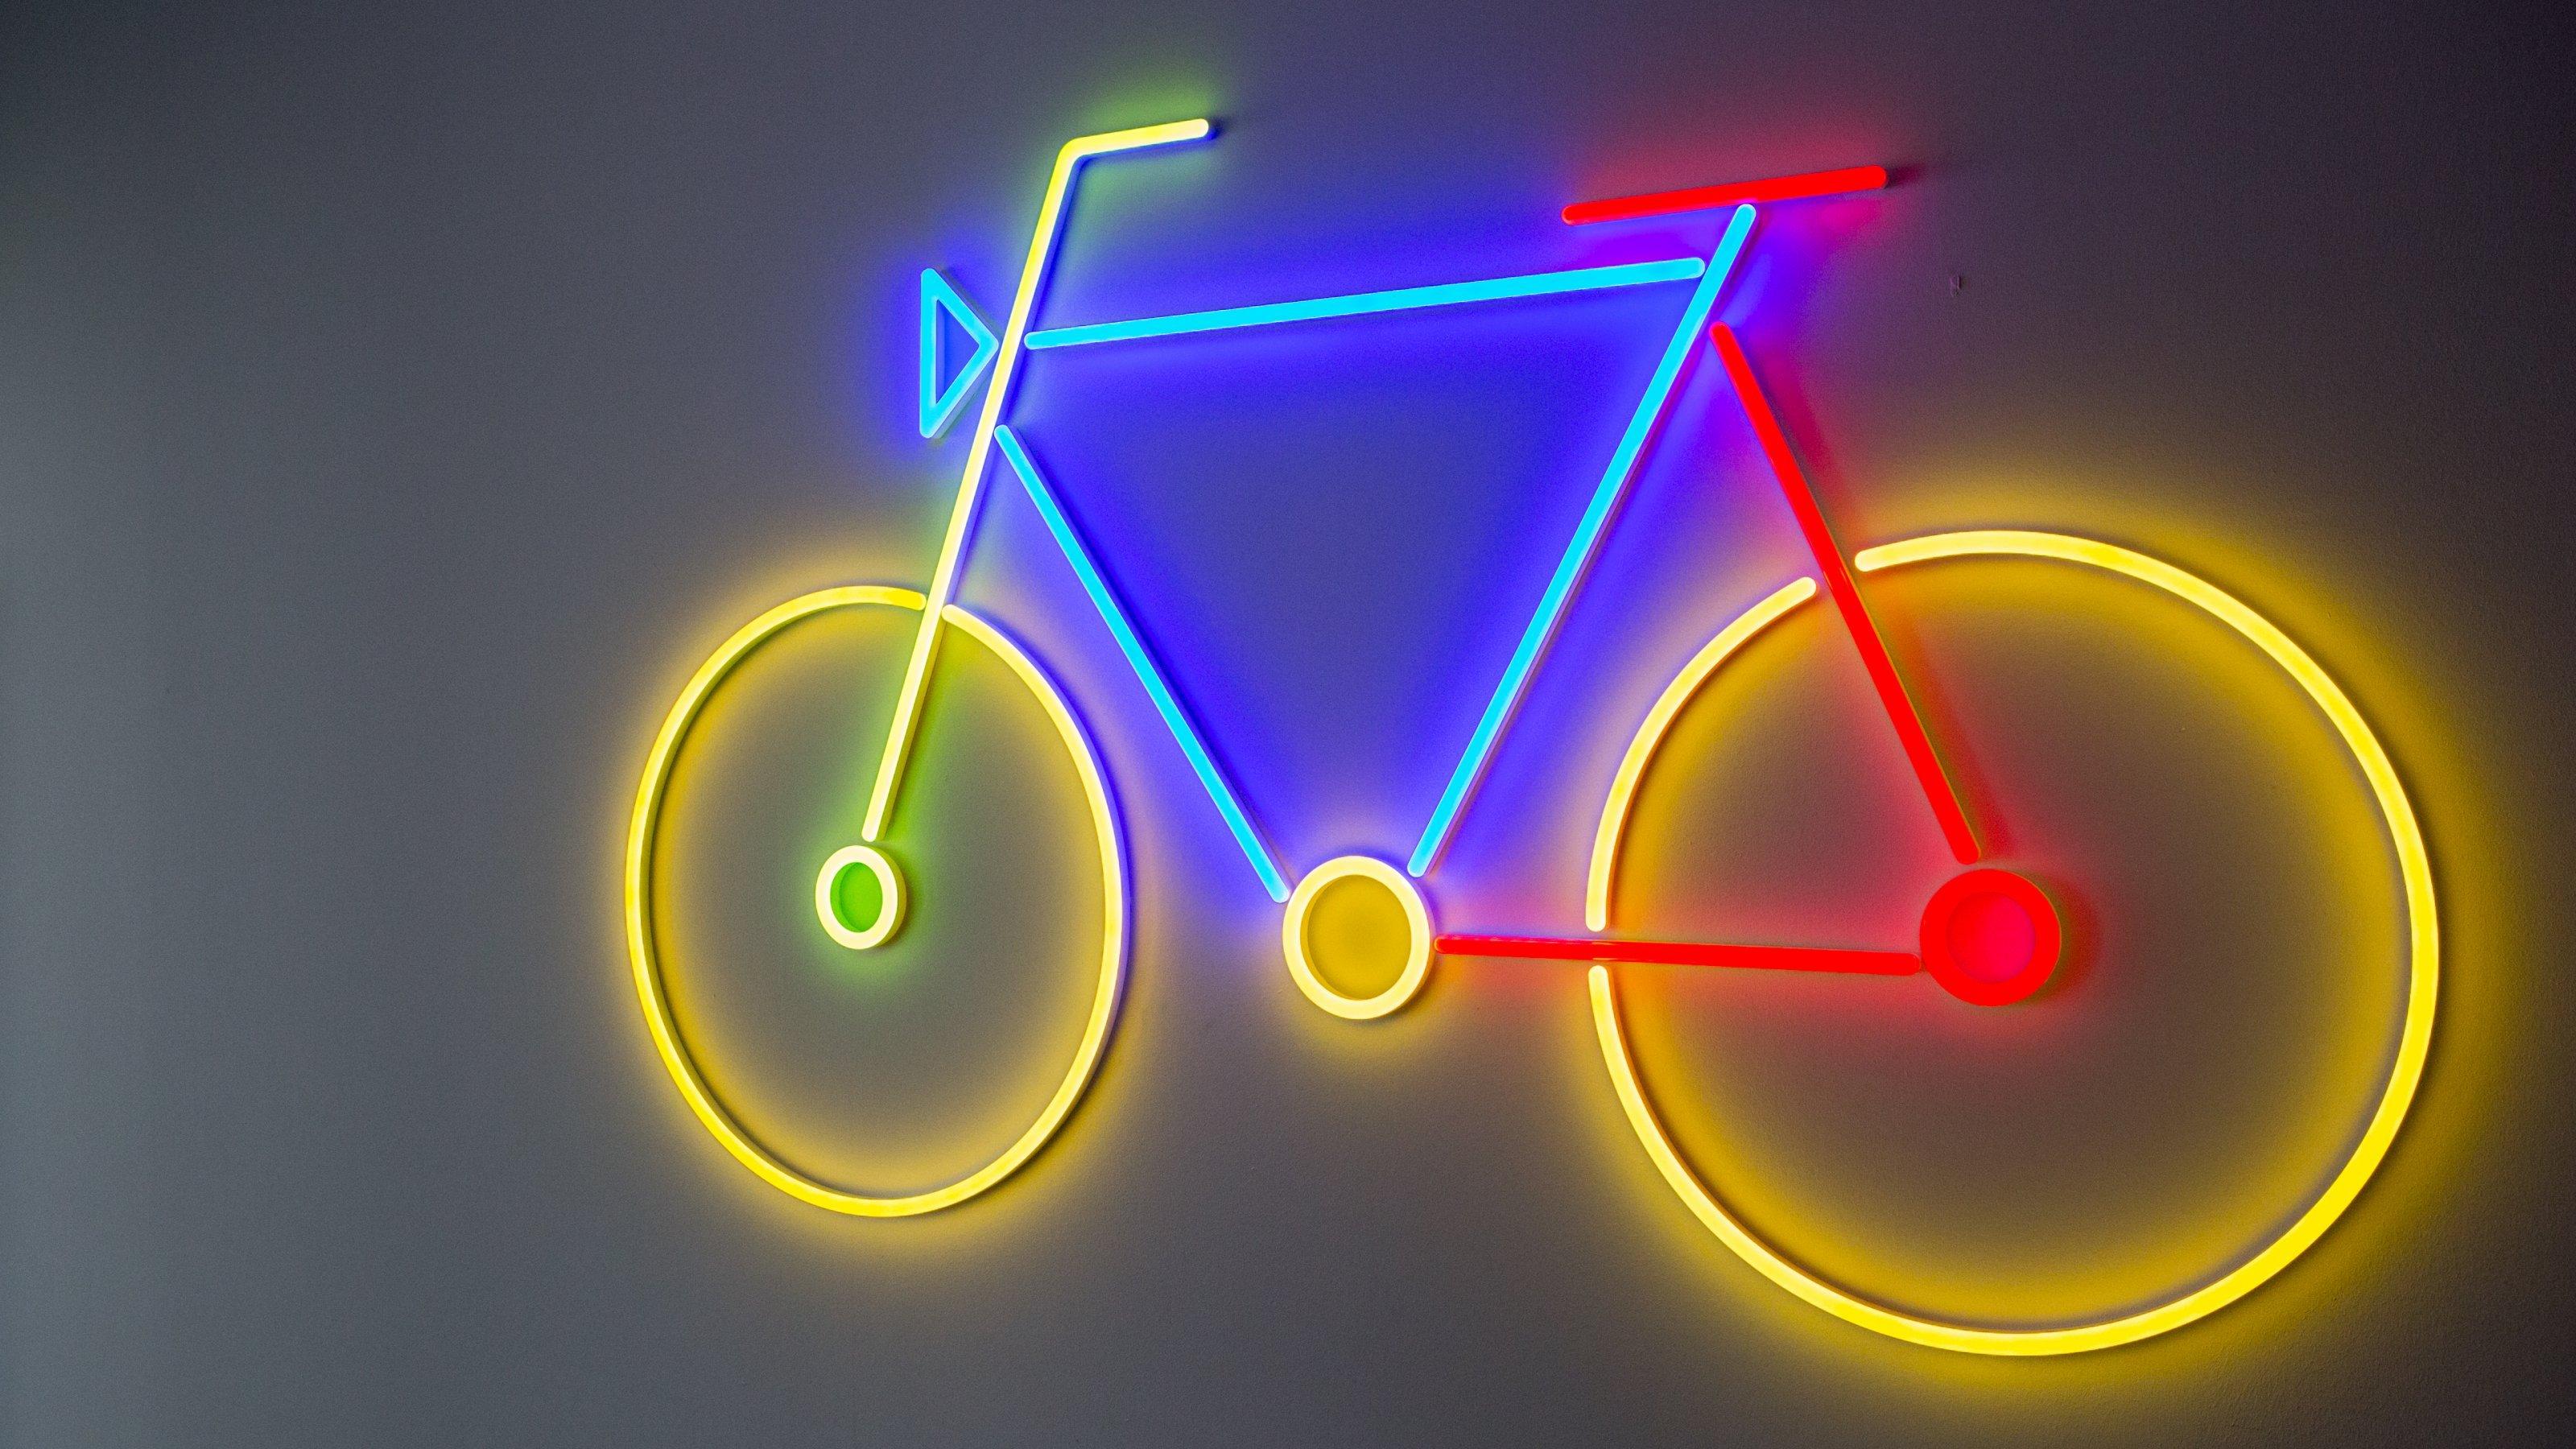 Stilisiertes Fahrrad, das in Neonfarben gelb, rot, blau und grün vor einem dunklen Hintergrund leuchtet.